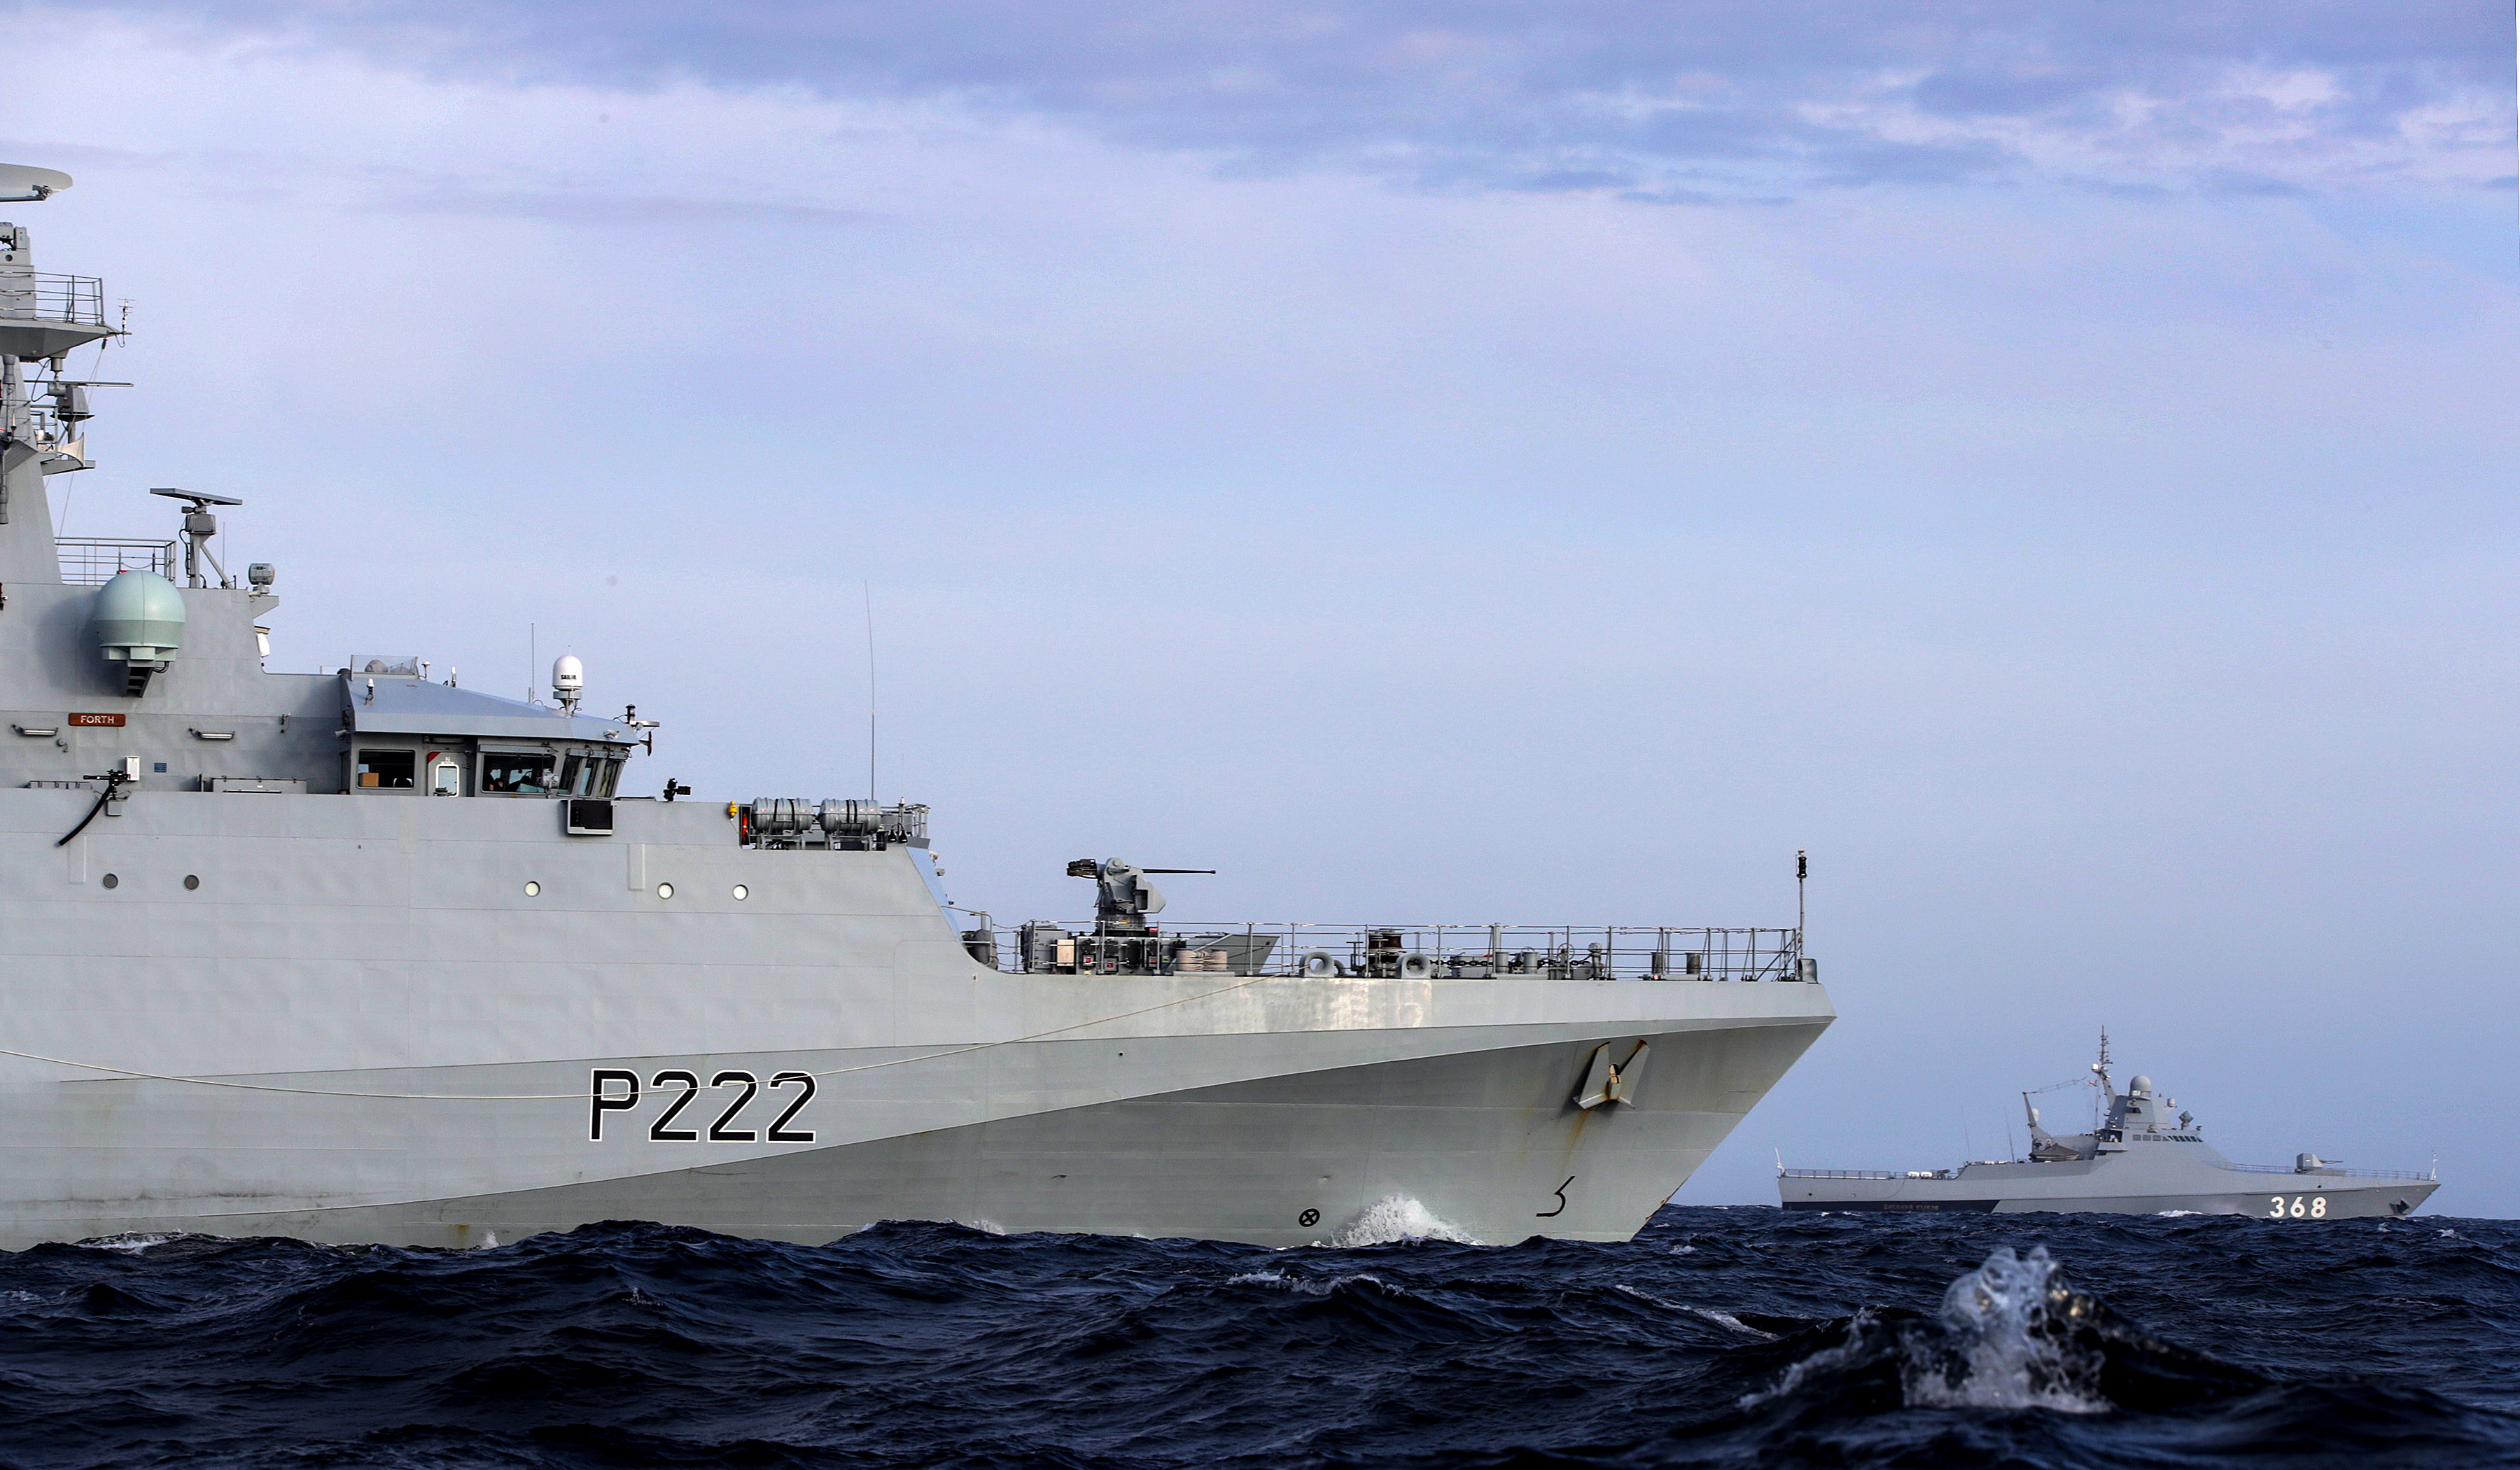 Новейший британский патрульный корабль  HMS Forth (P222) сопровождает новейший  патрульный корабль  Vasily Bykov  в проливе Ла-Манш (Английском канале), фото сделано 6 августа 2019 года